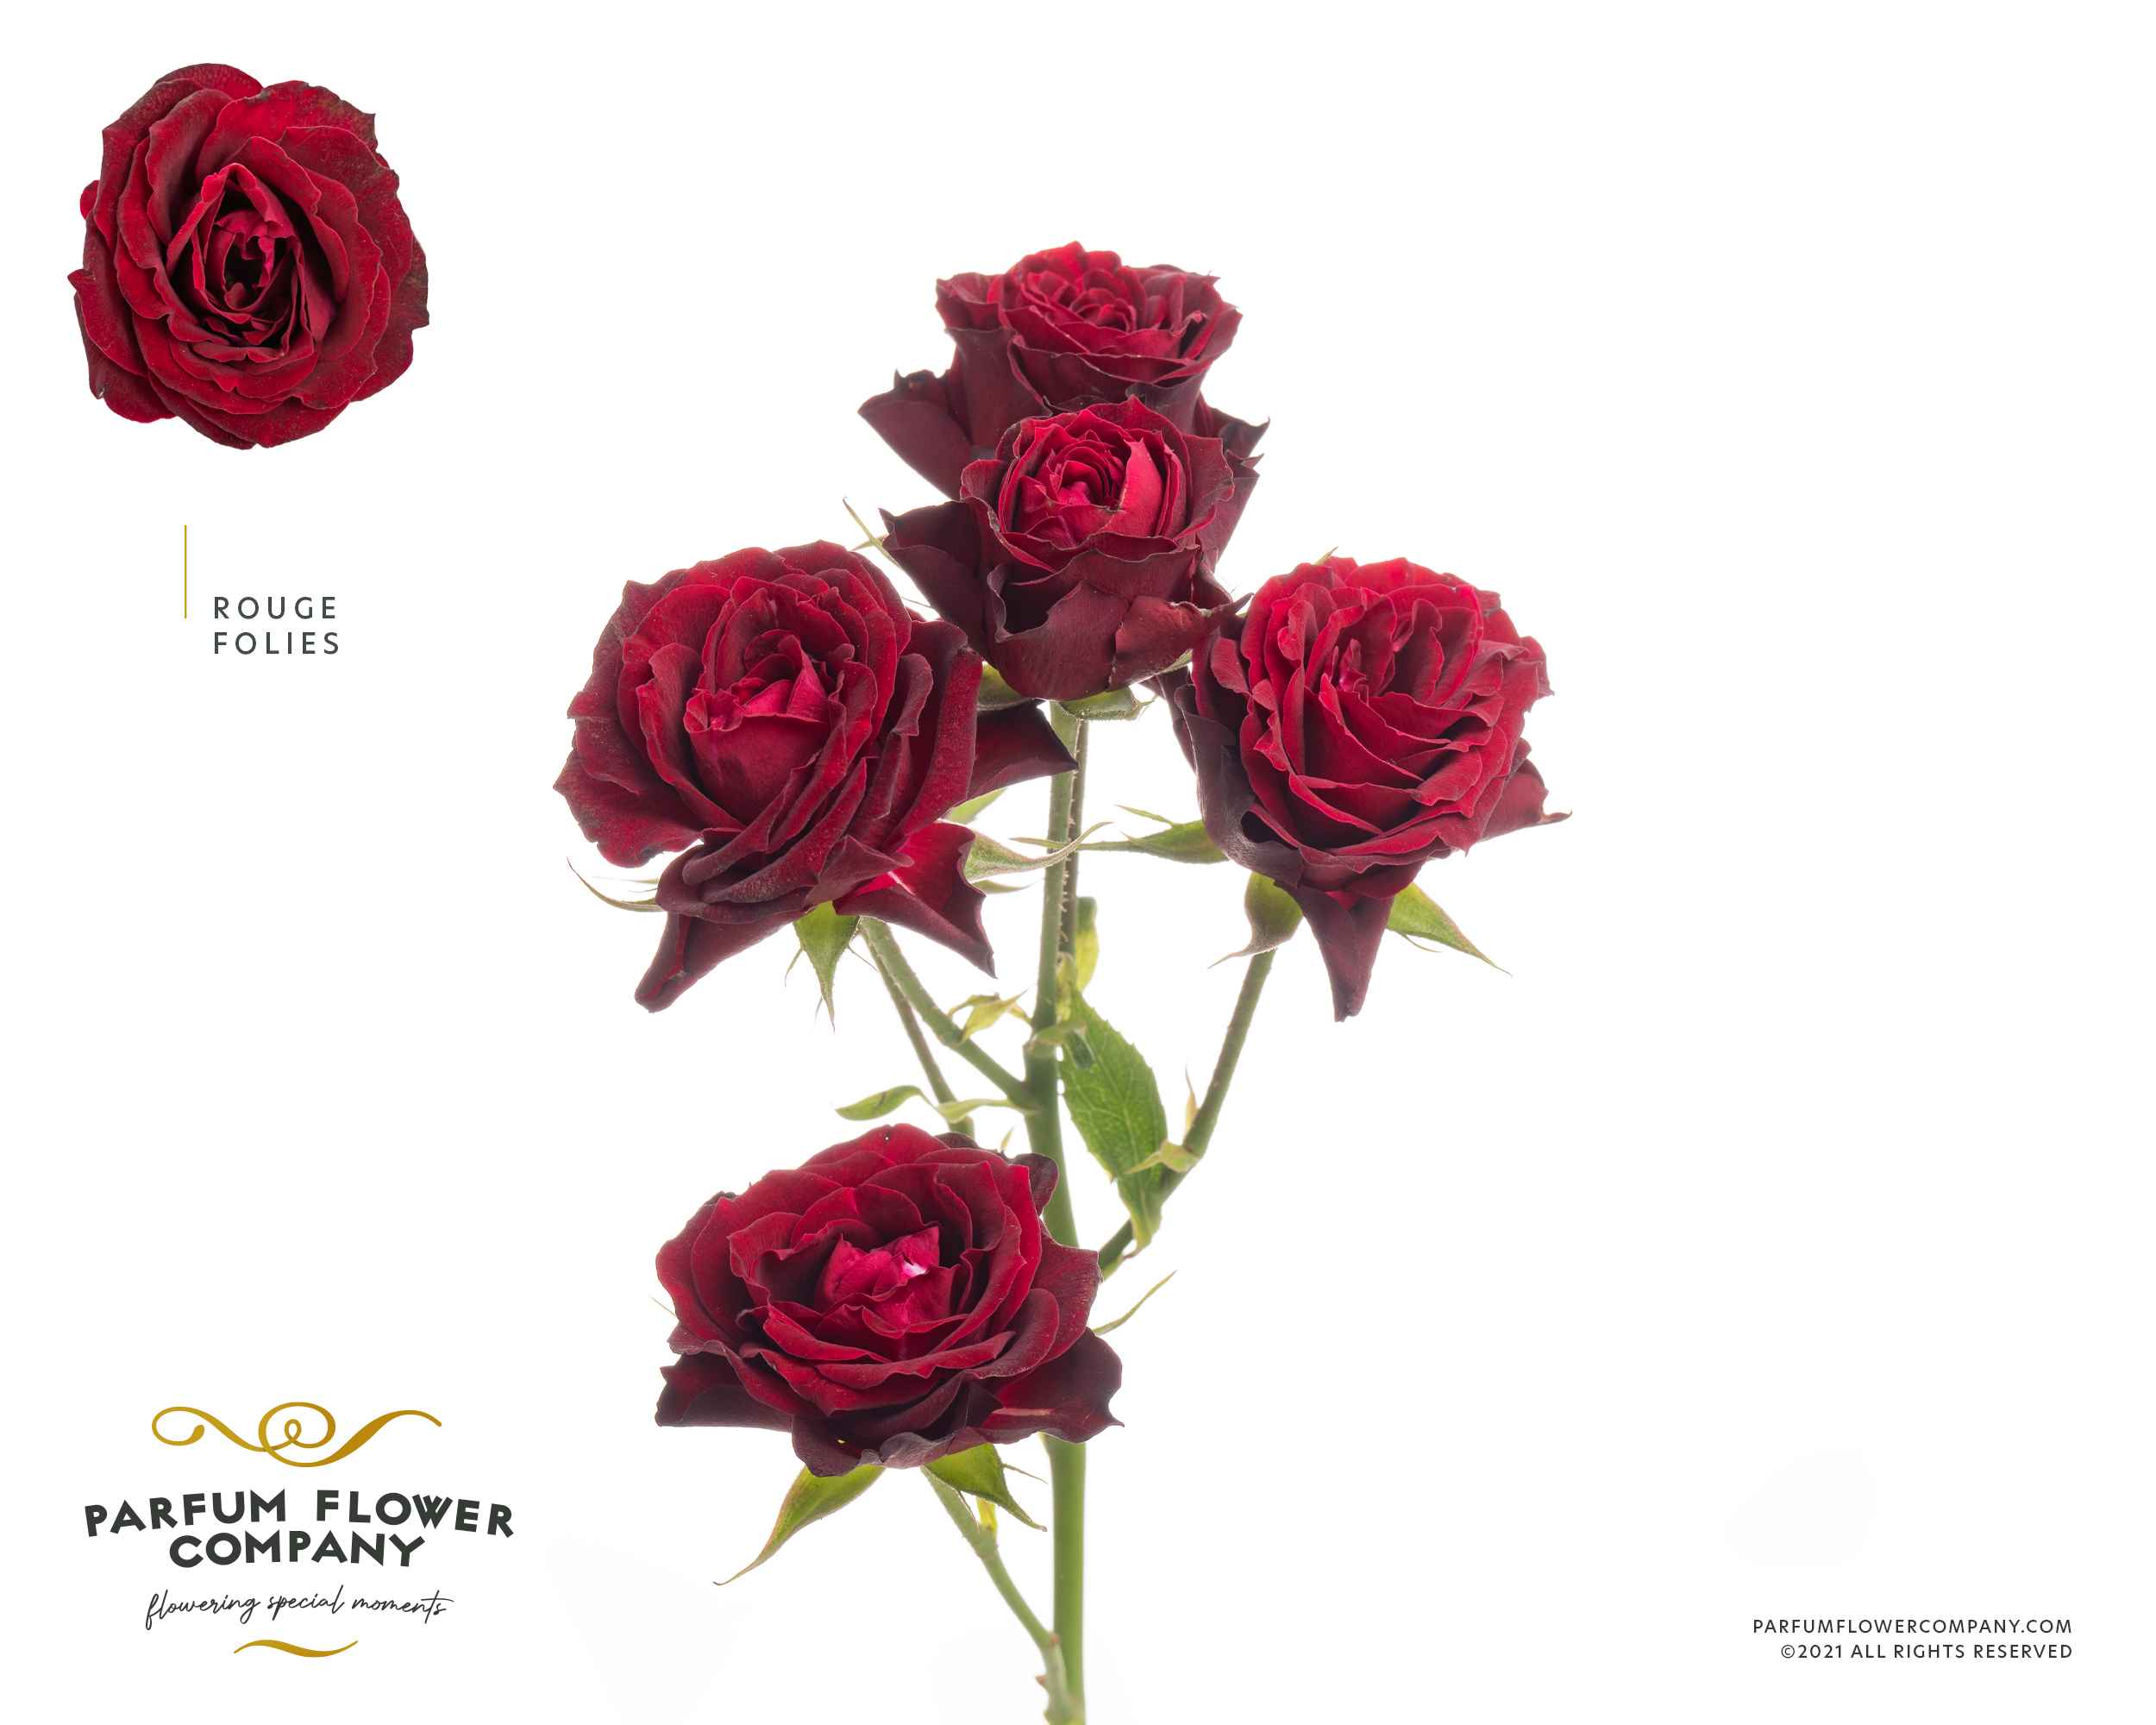 Срезанные цветы оптом Rosa sp rouge follies от 24шт из Голландии с доставкой по России